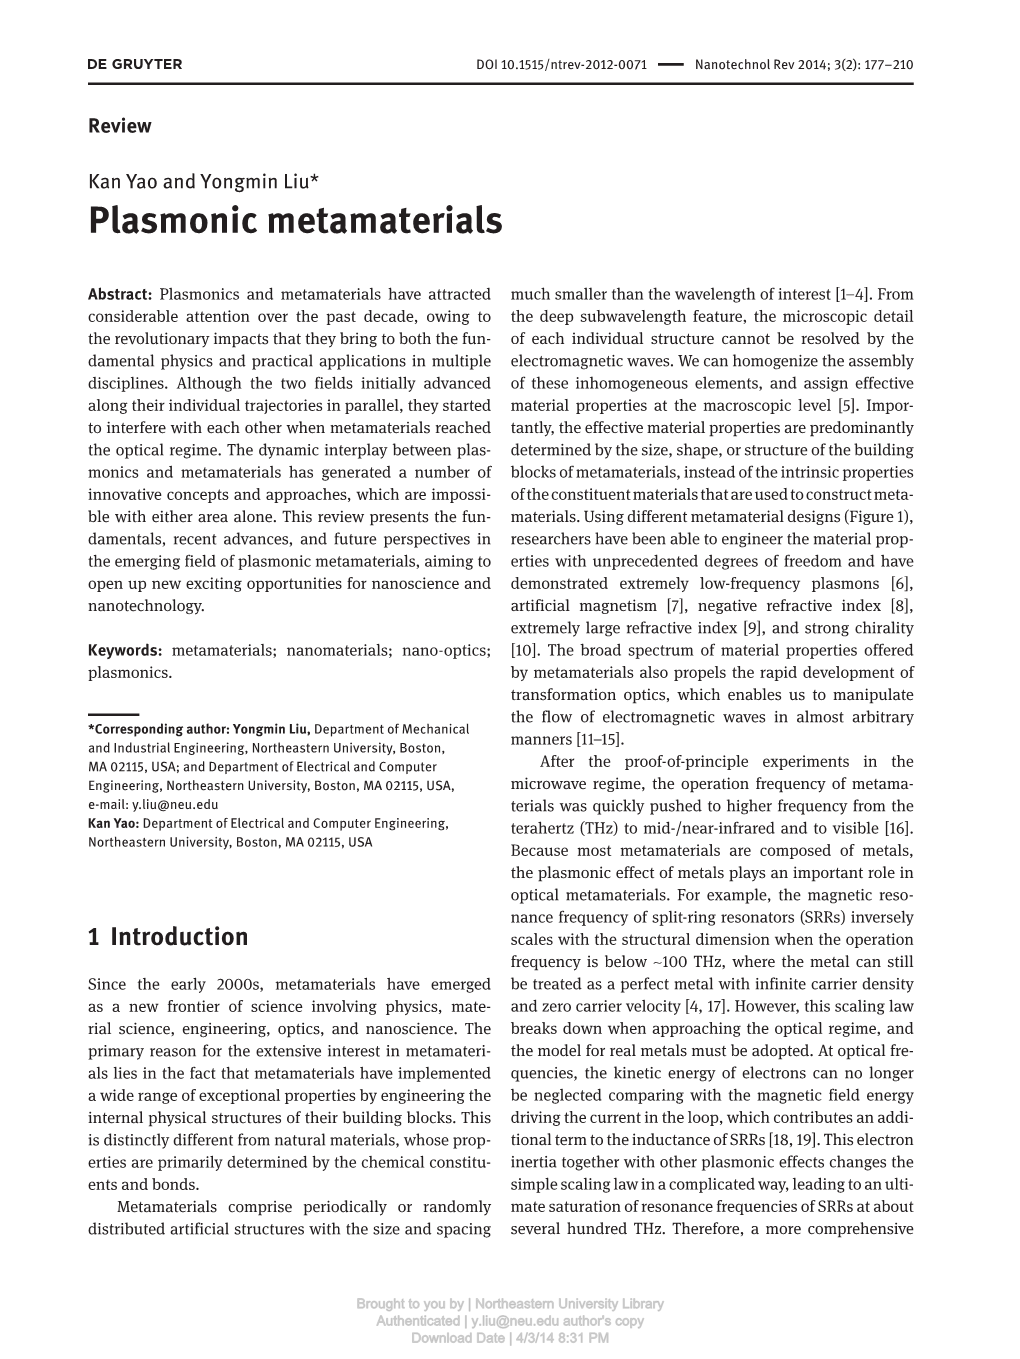 Plasmonic Metamaterials